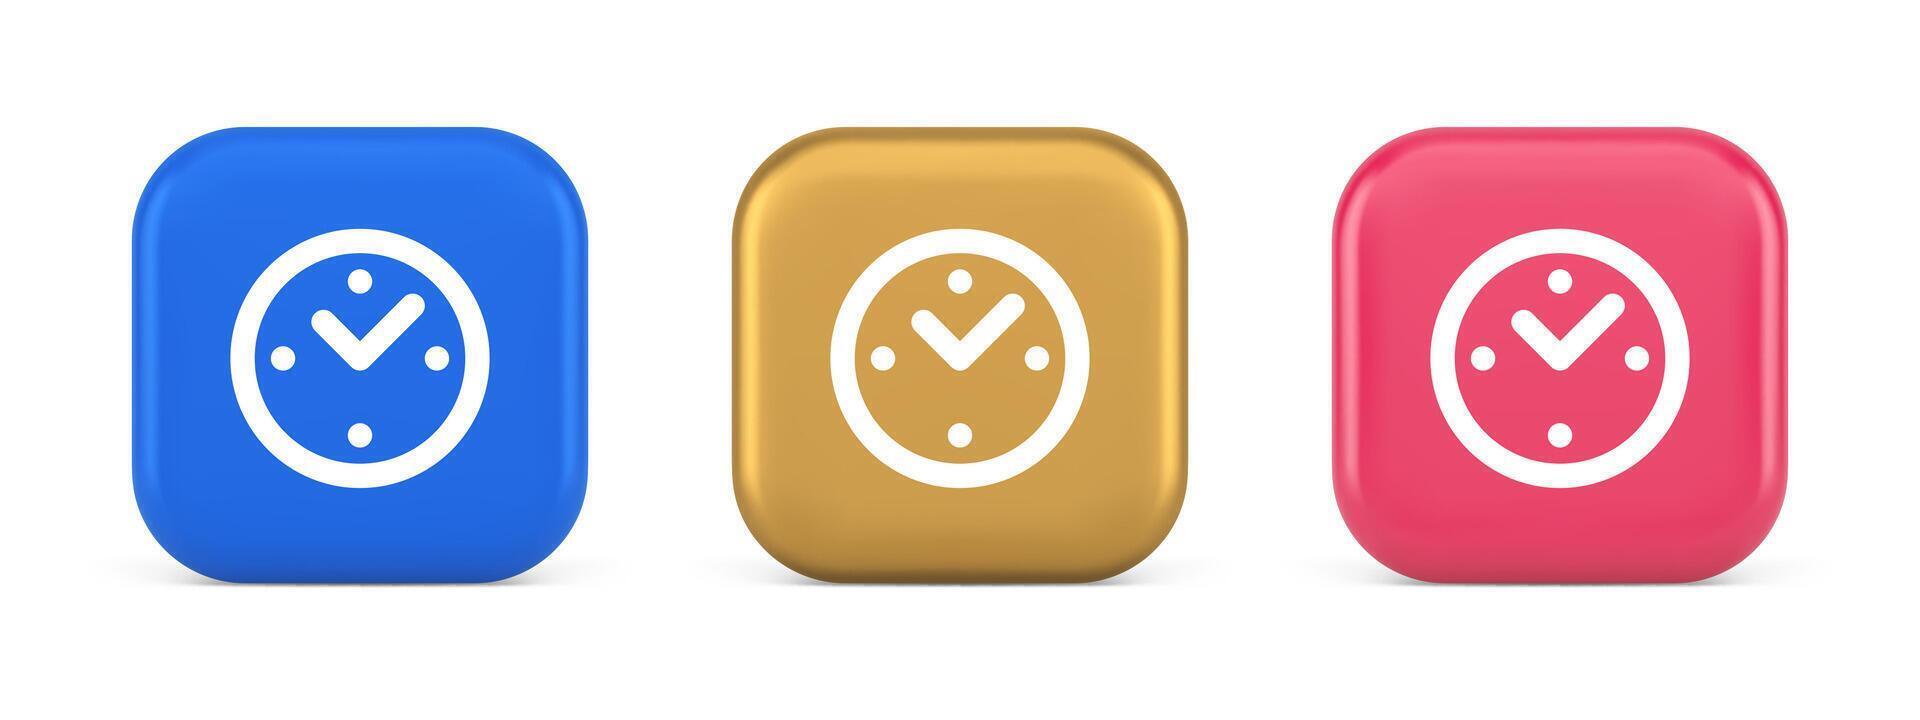 alarma reloj hora cuenta regresiva botón fecha límite medición 3d realista icono vector